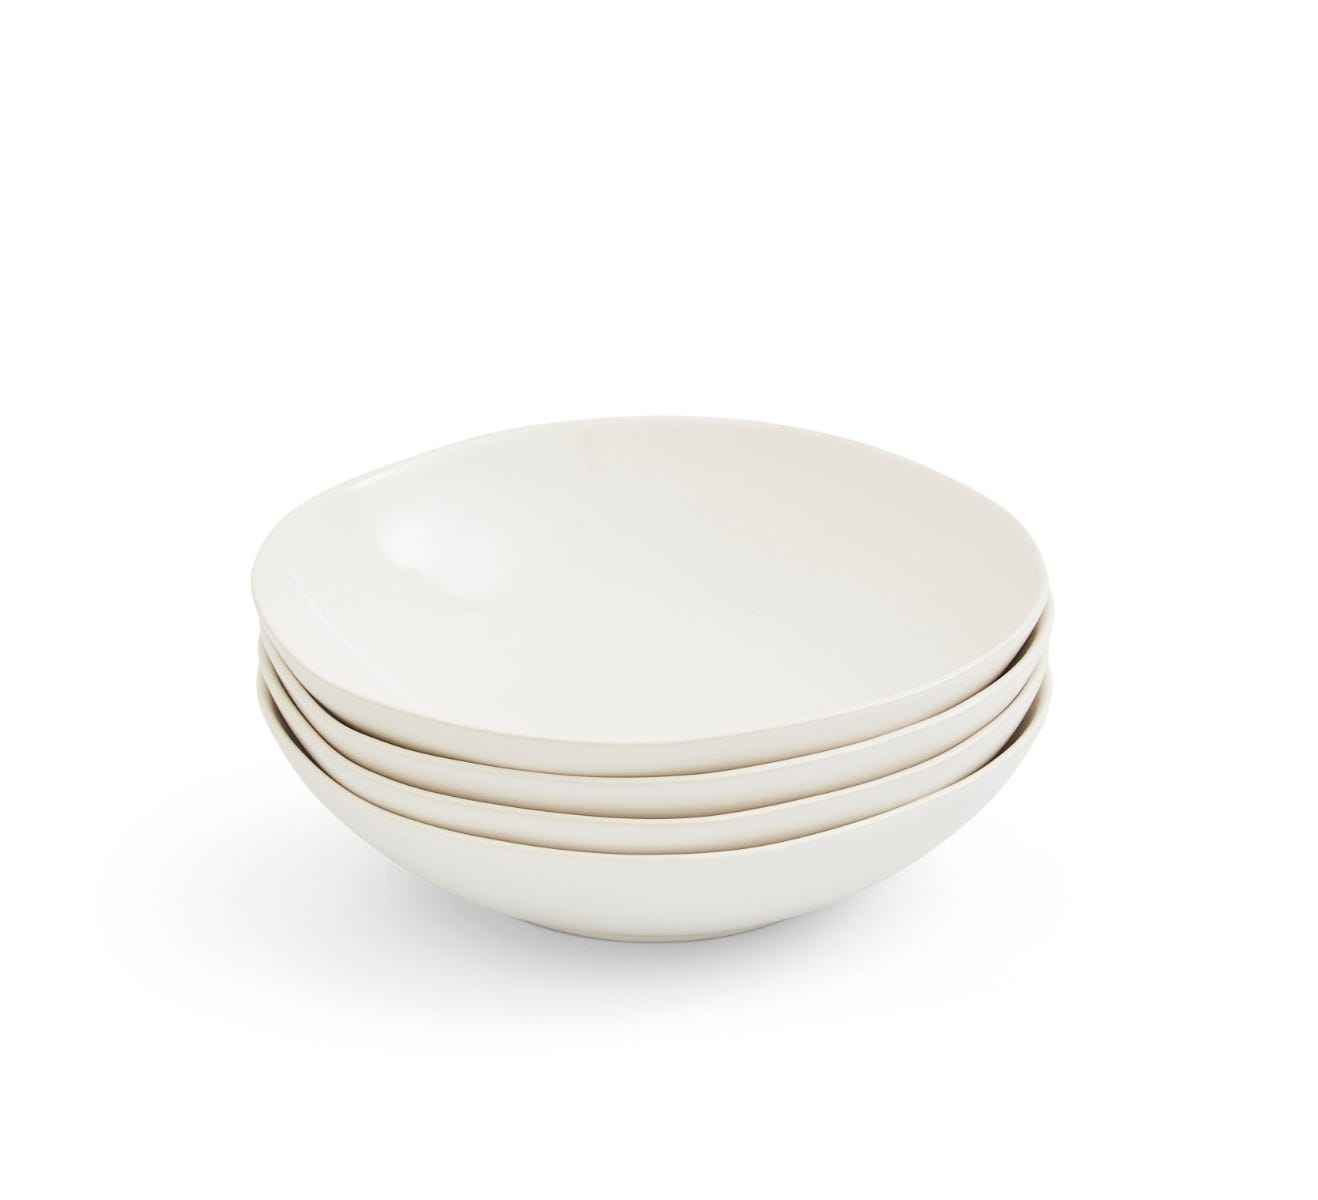 Sophie Conran Arbor Set of 4 Pasta Bowls, Cream